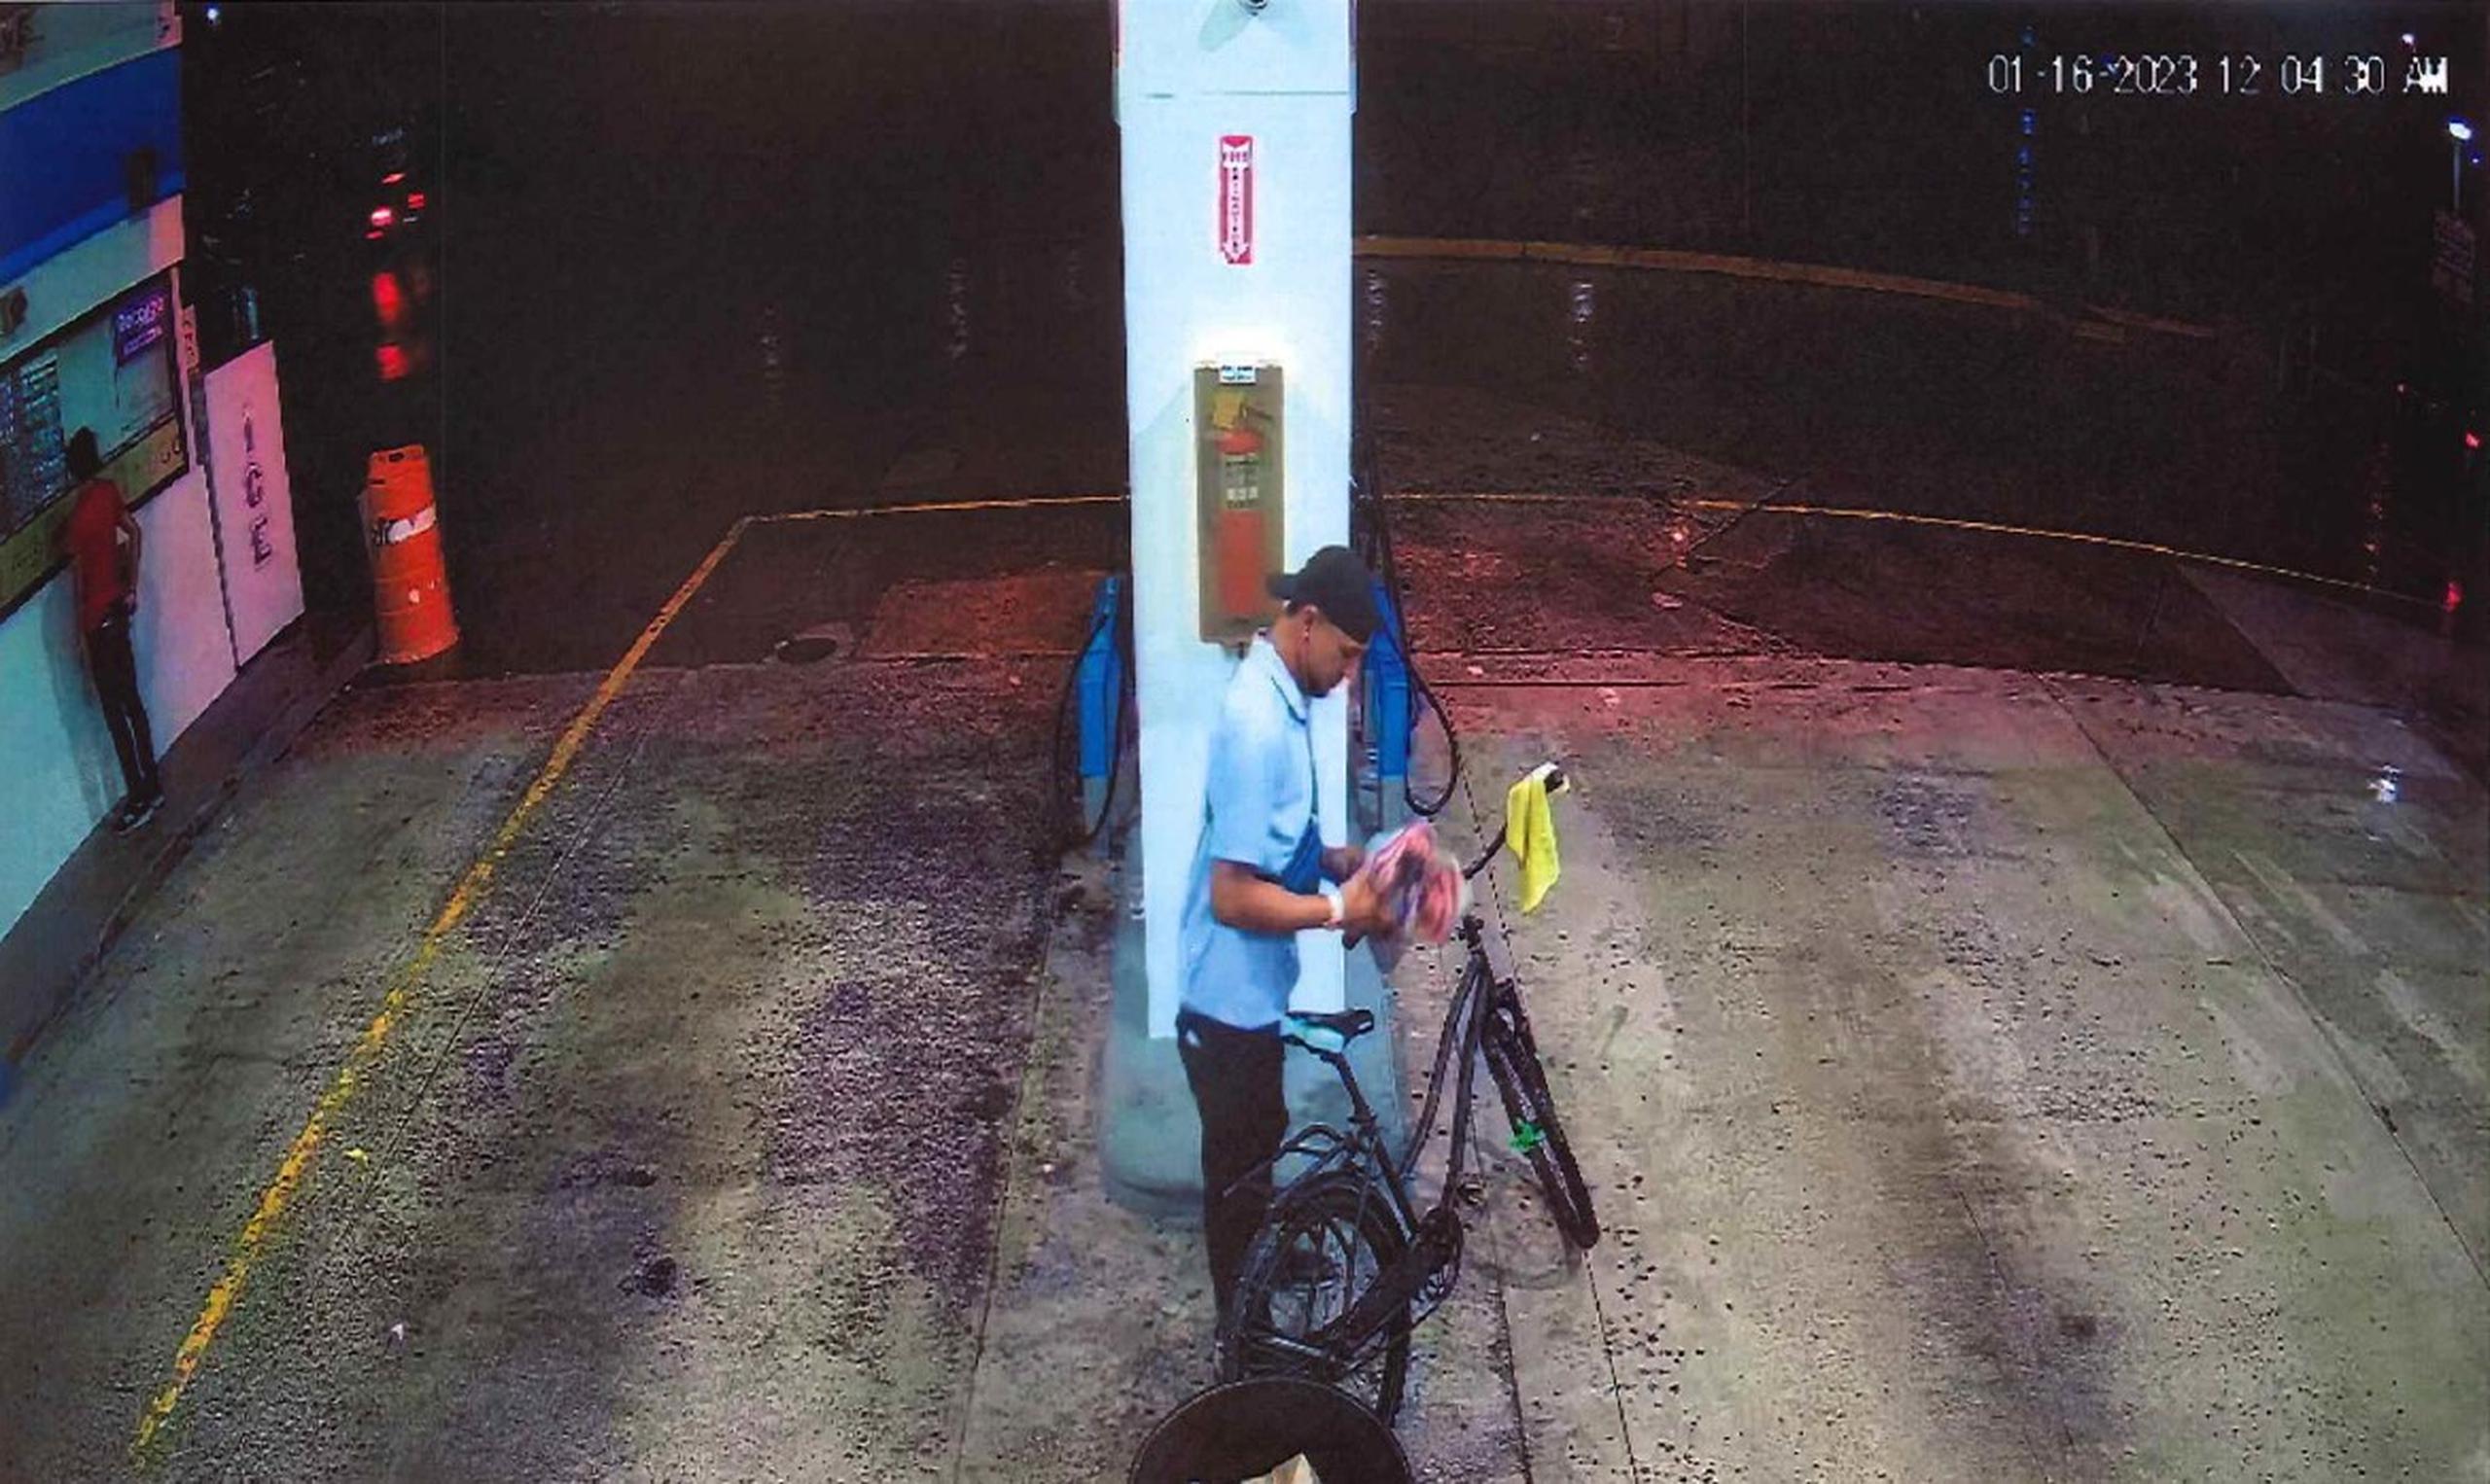 Imagen del sospechoso de cometer un robo, el día 16 de enero, en la gasolinera Gulf, localizada de la carretera PR-860, en Carolina.